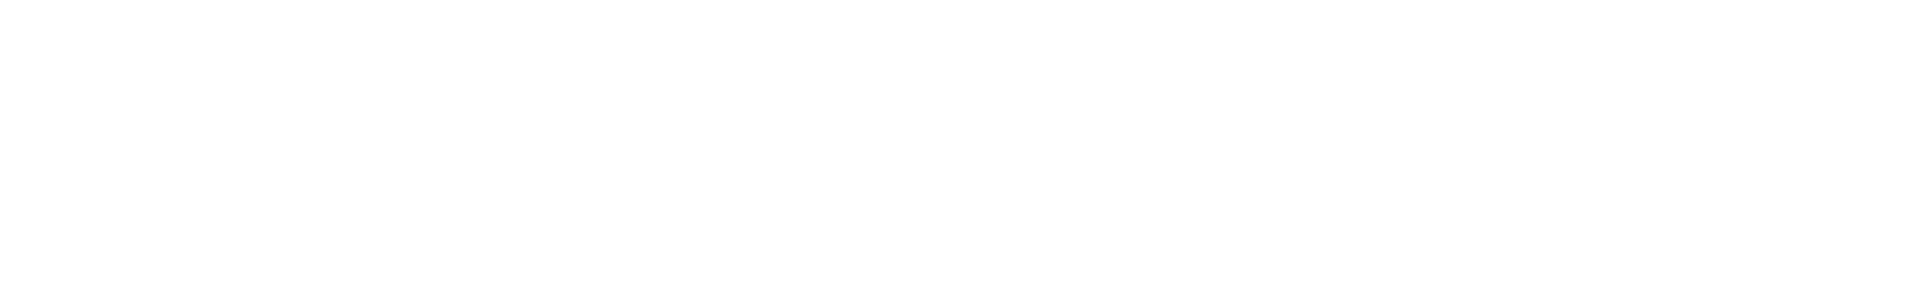 White wave -like shape